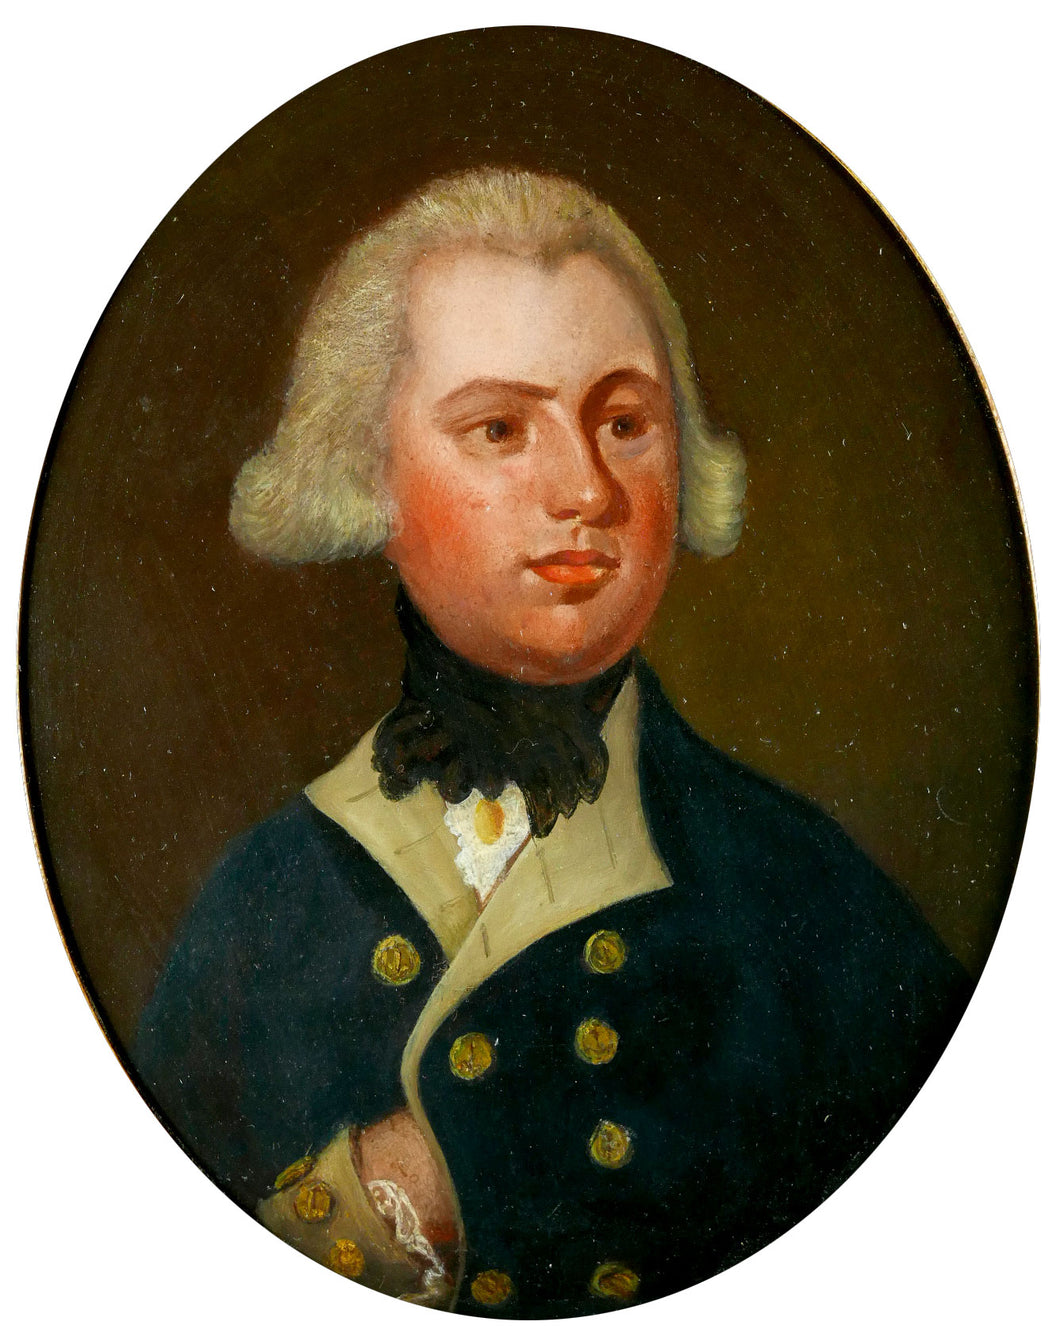 Portrait of a Royal Navy Lieutenant, Circa 1795